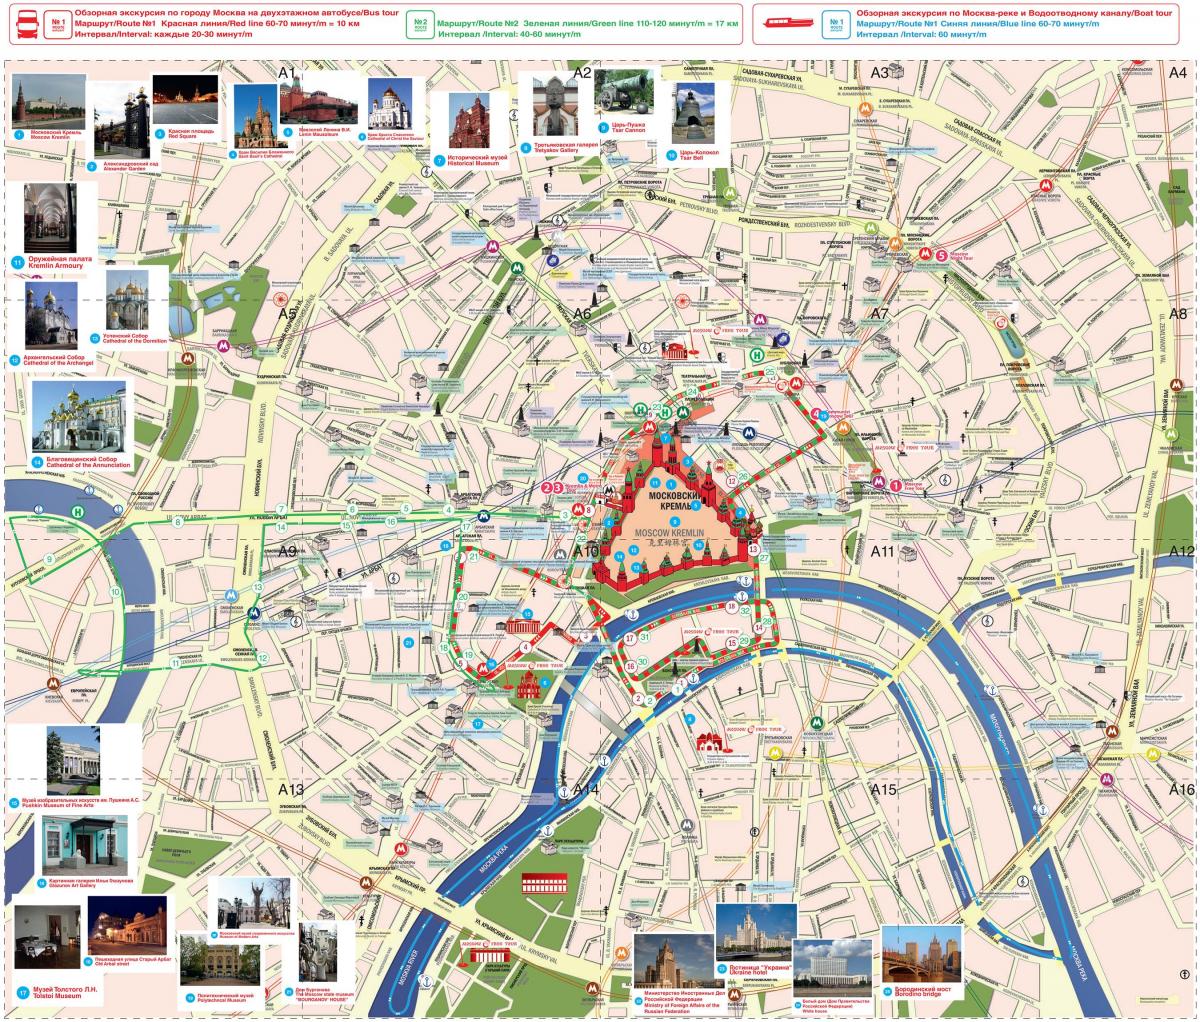 Moskva attraktion karta